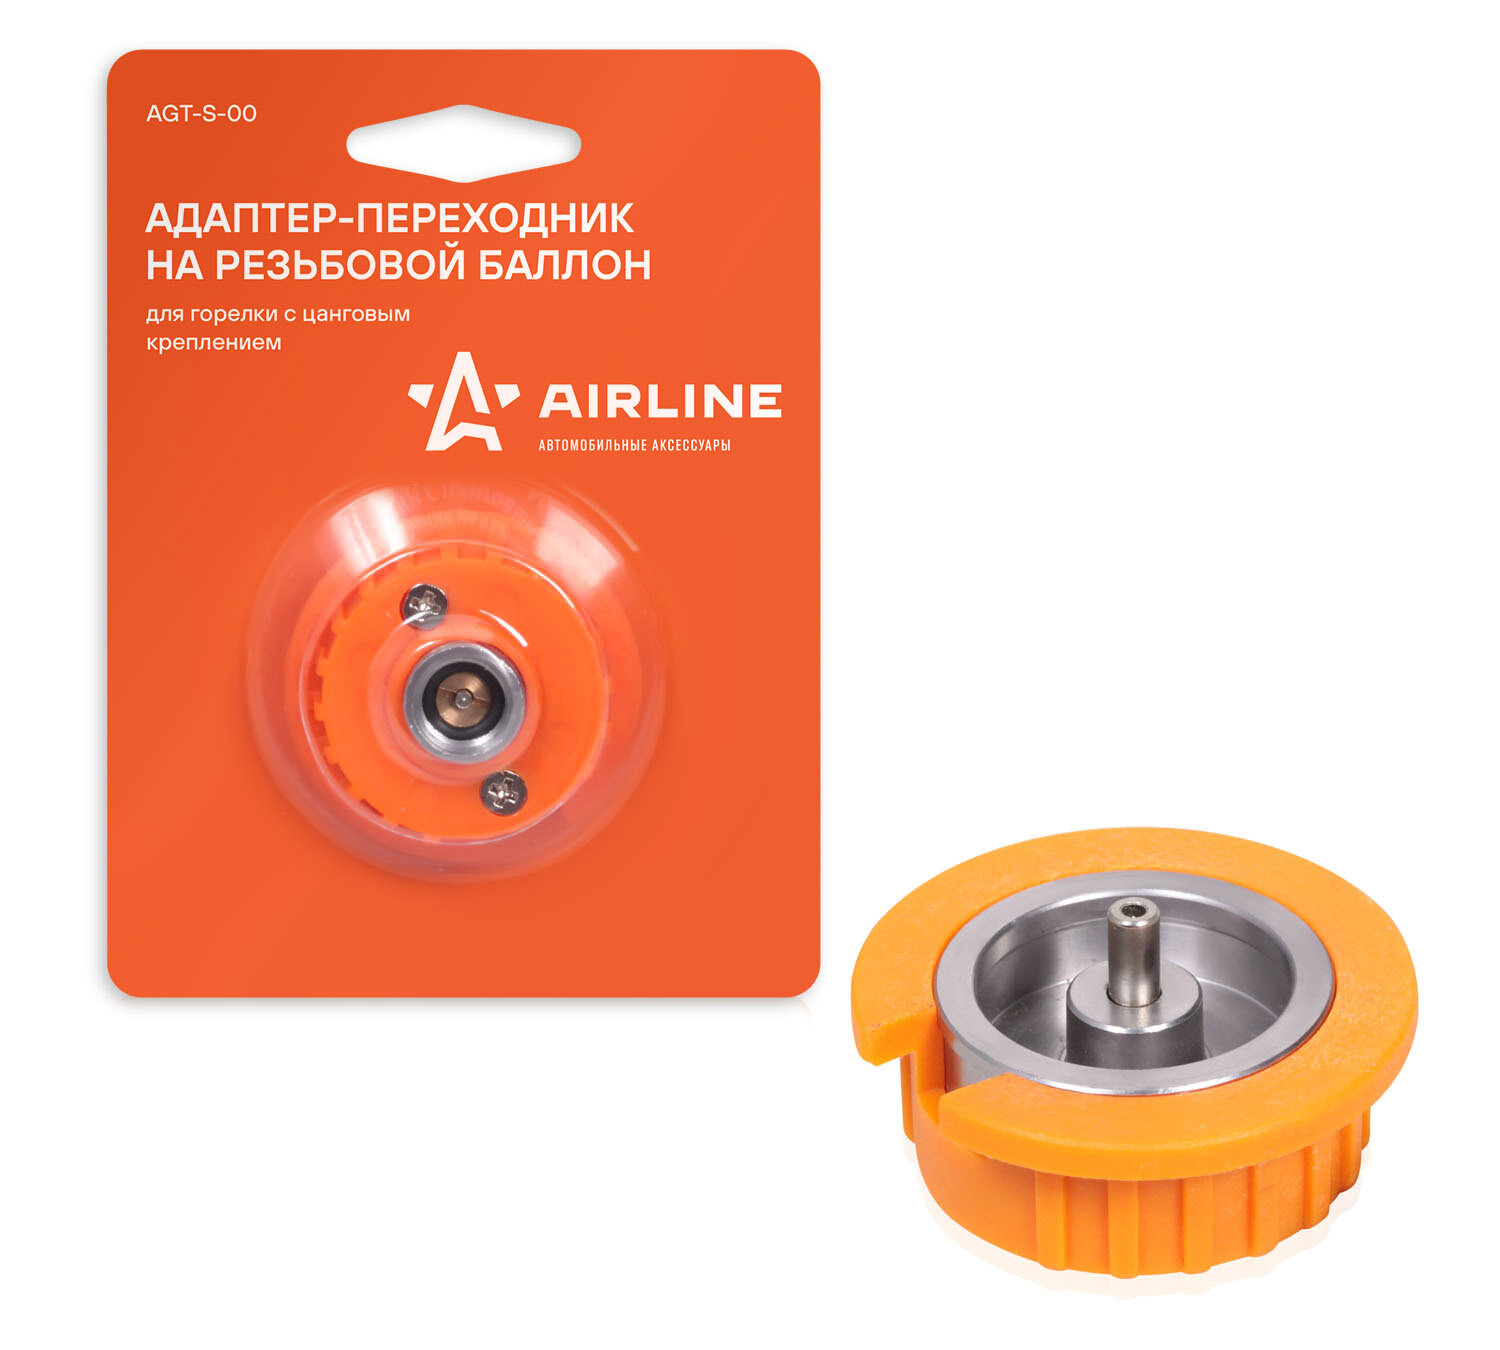 Адаптер-переходник "AIRLINE" (на резьбовой баллон для горелки с цанговым креплением) AIRLINE AGT-S-00